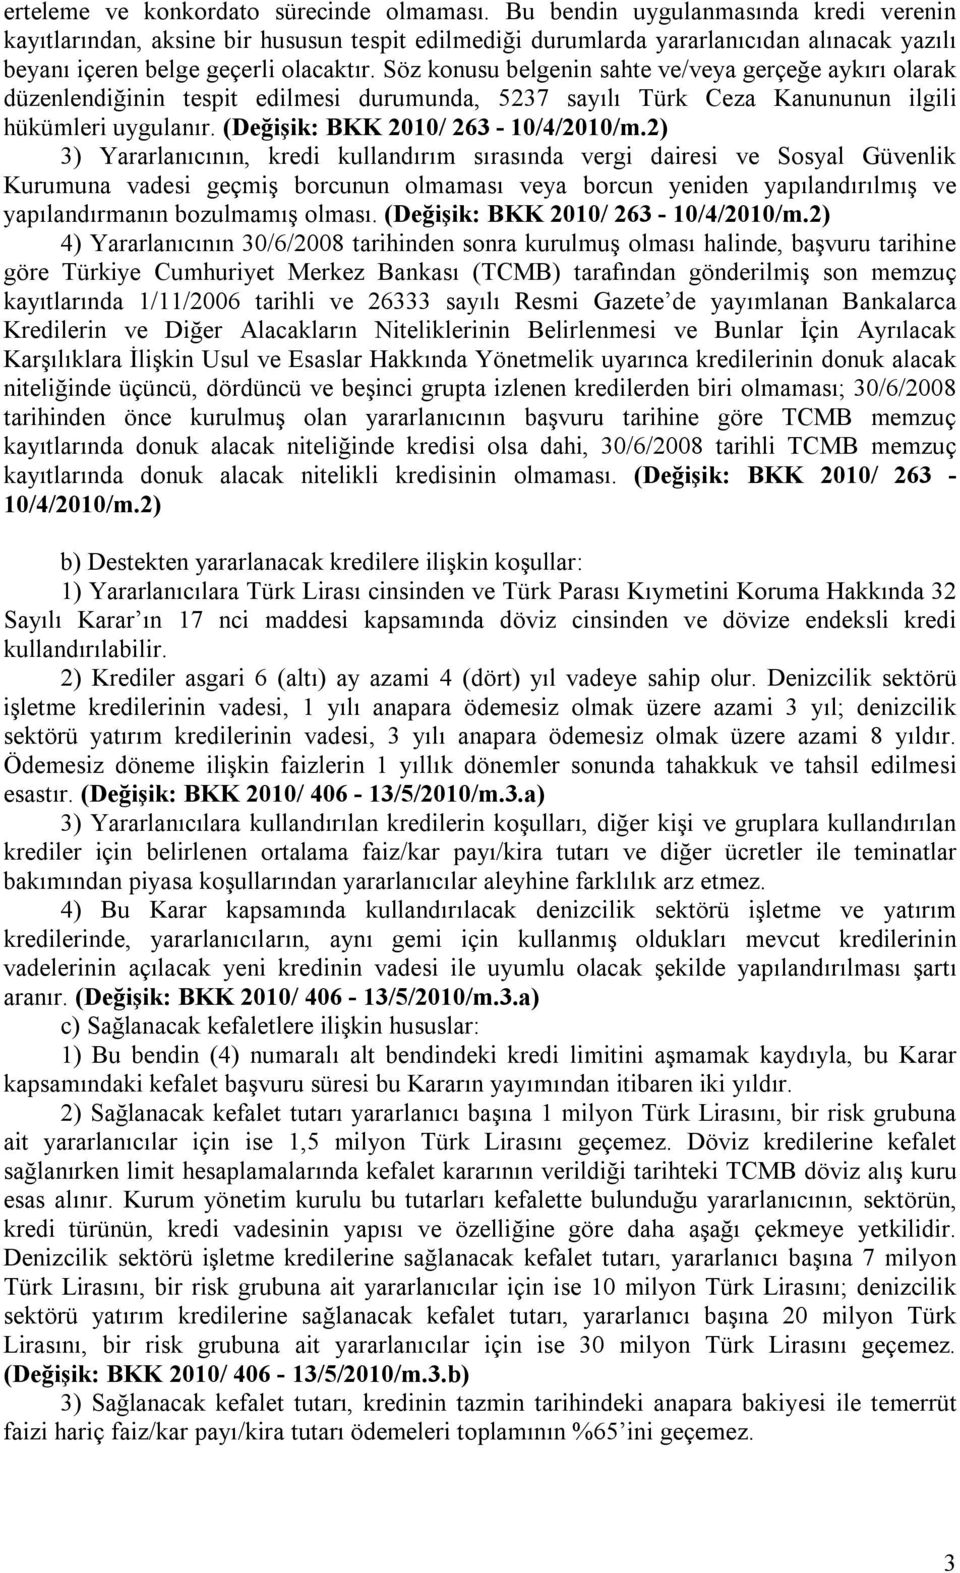 Söz konusu belgenin sahte ve/veya gerçeğe aykırı olarak düzenlendiğinin tespit edilmesi durumunda, 5237 sayılı Türk Ceza Kanununun ilgili hükümleri uygulanır. (Değişik: BKK 2010/ 263-10/4/2010/m.